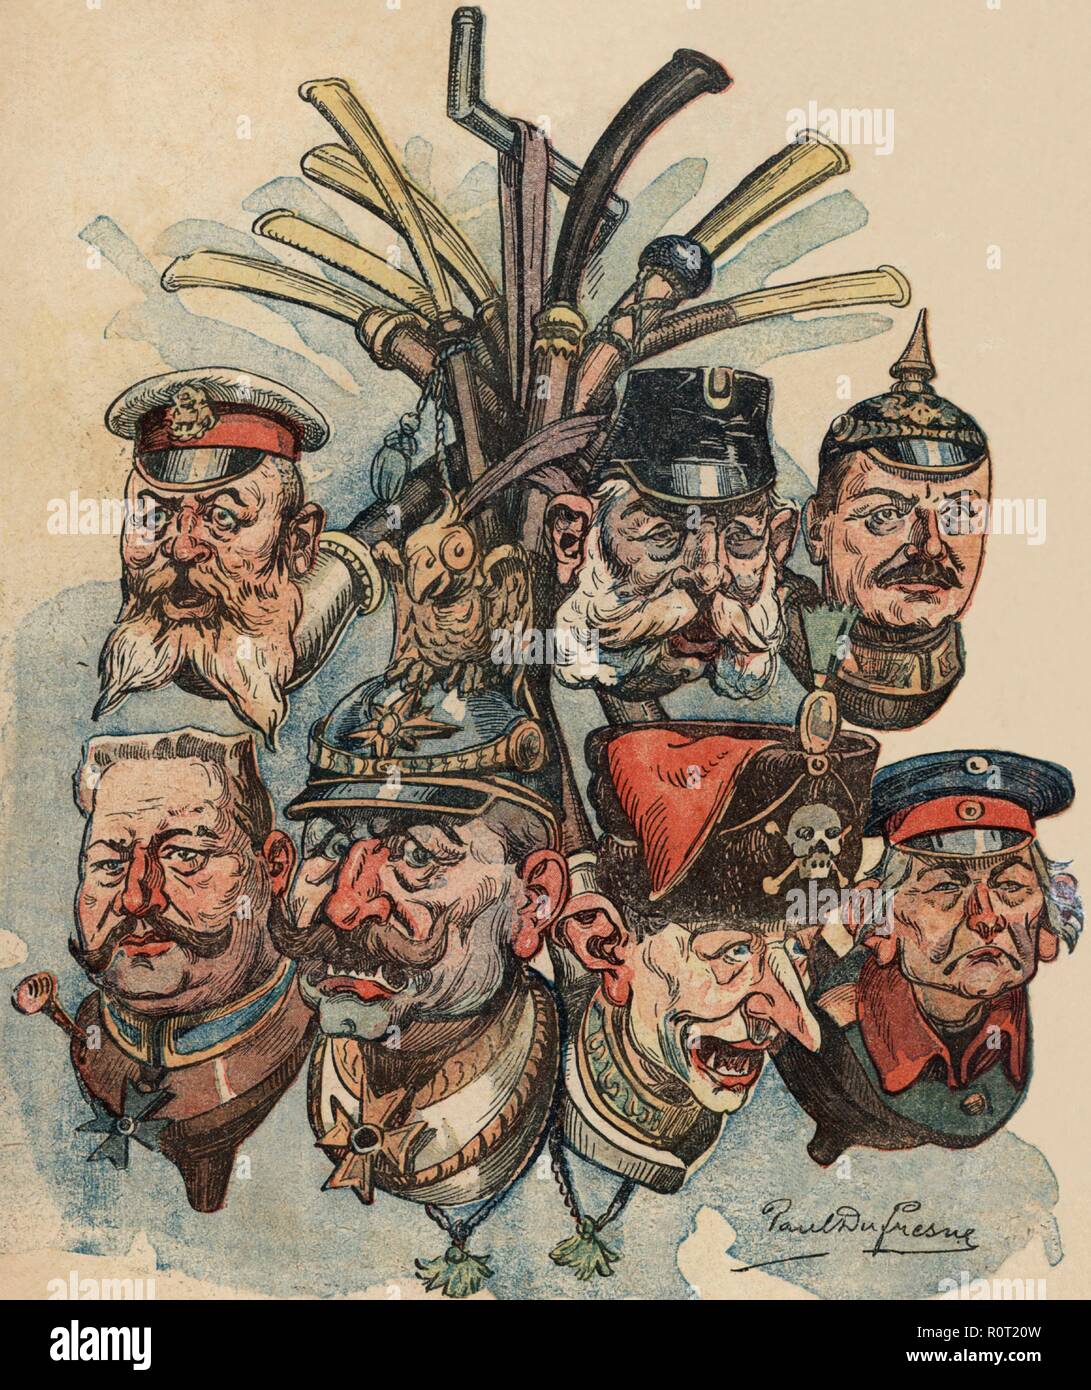 Primera guerra mundial (1914-1918). Caricaturas de dirigentes militares de la alianza austroalemana. Año 1914. Stock Photo